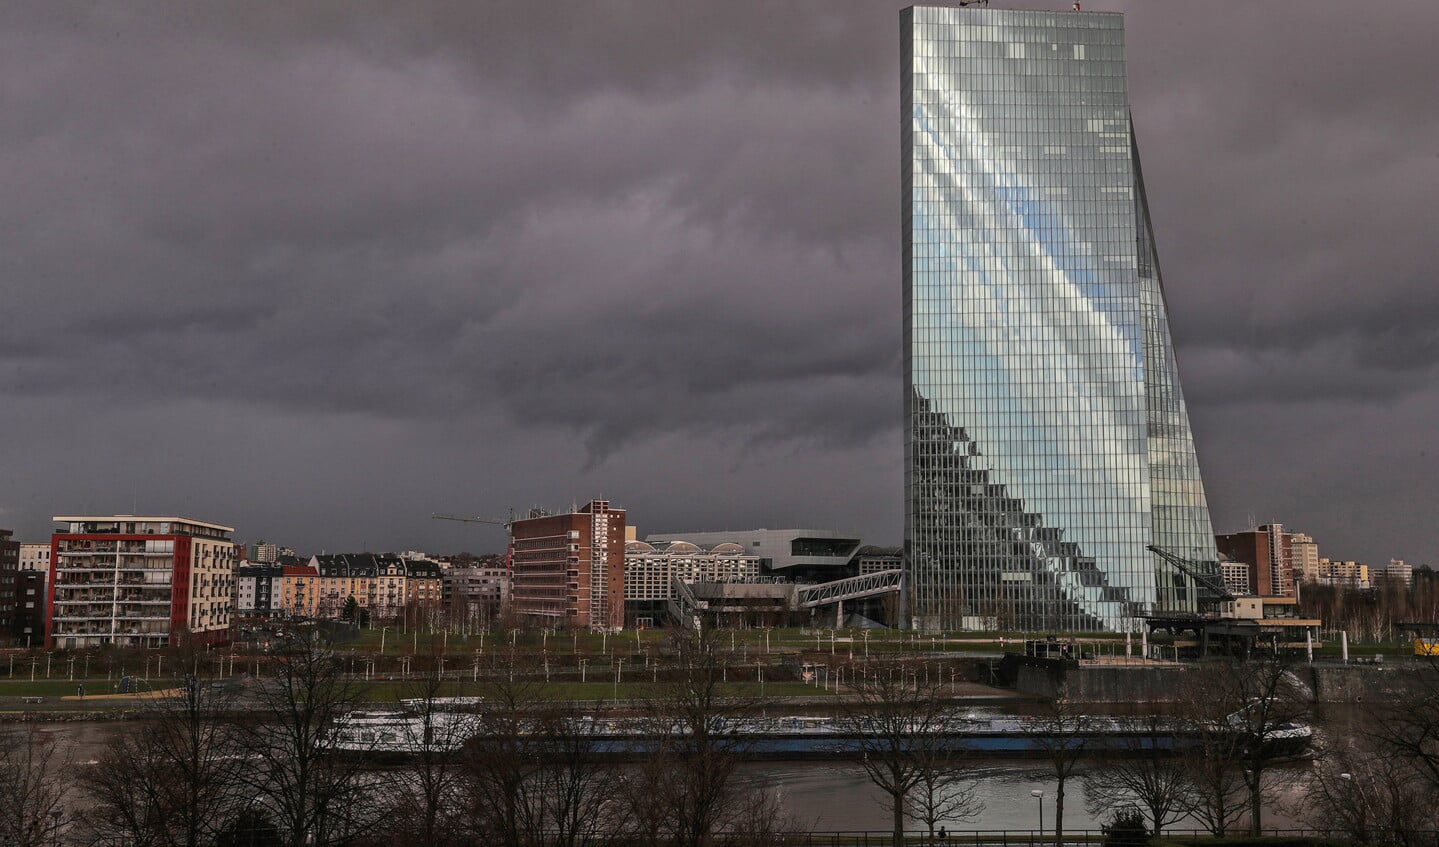 Het glazen onderkomen van de Europese Centrale Bank in Frankfurt. De bank voerde de afgelopen jaren een ruimhartig beleid, met lage rente en het opkopen van schulden.